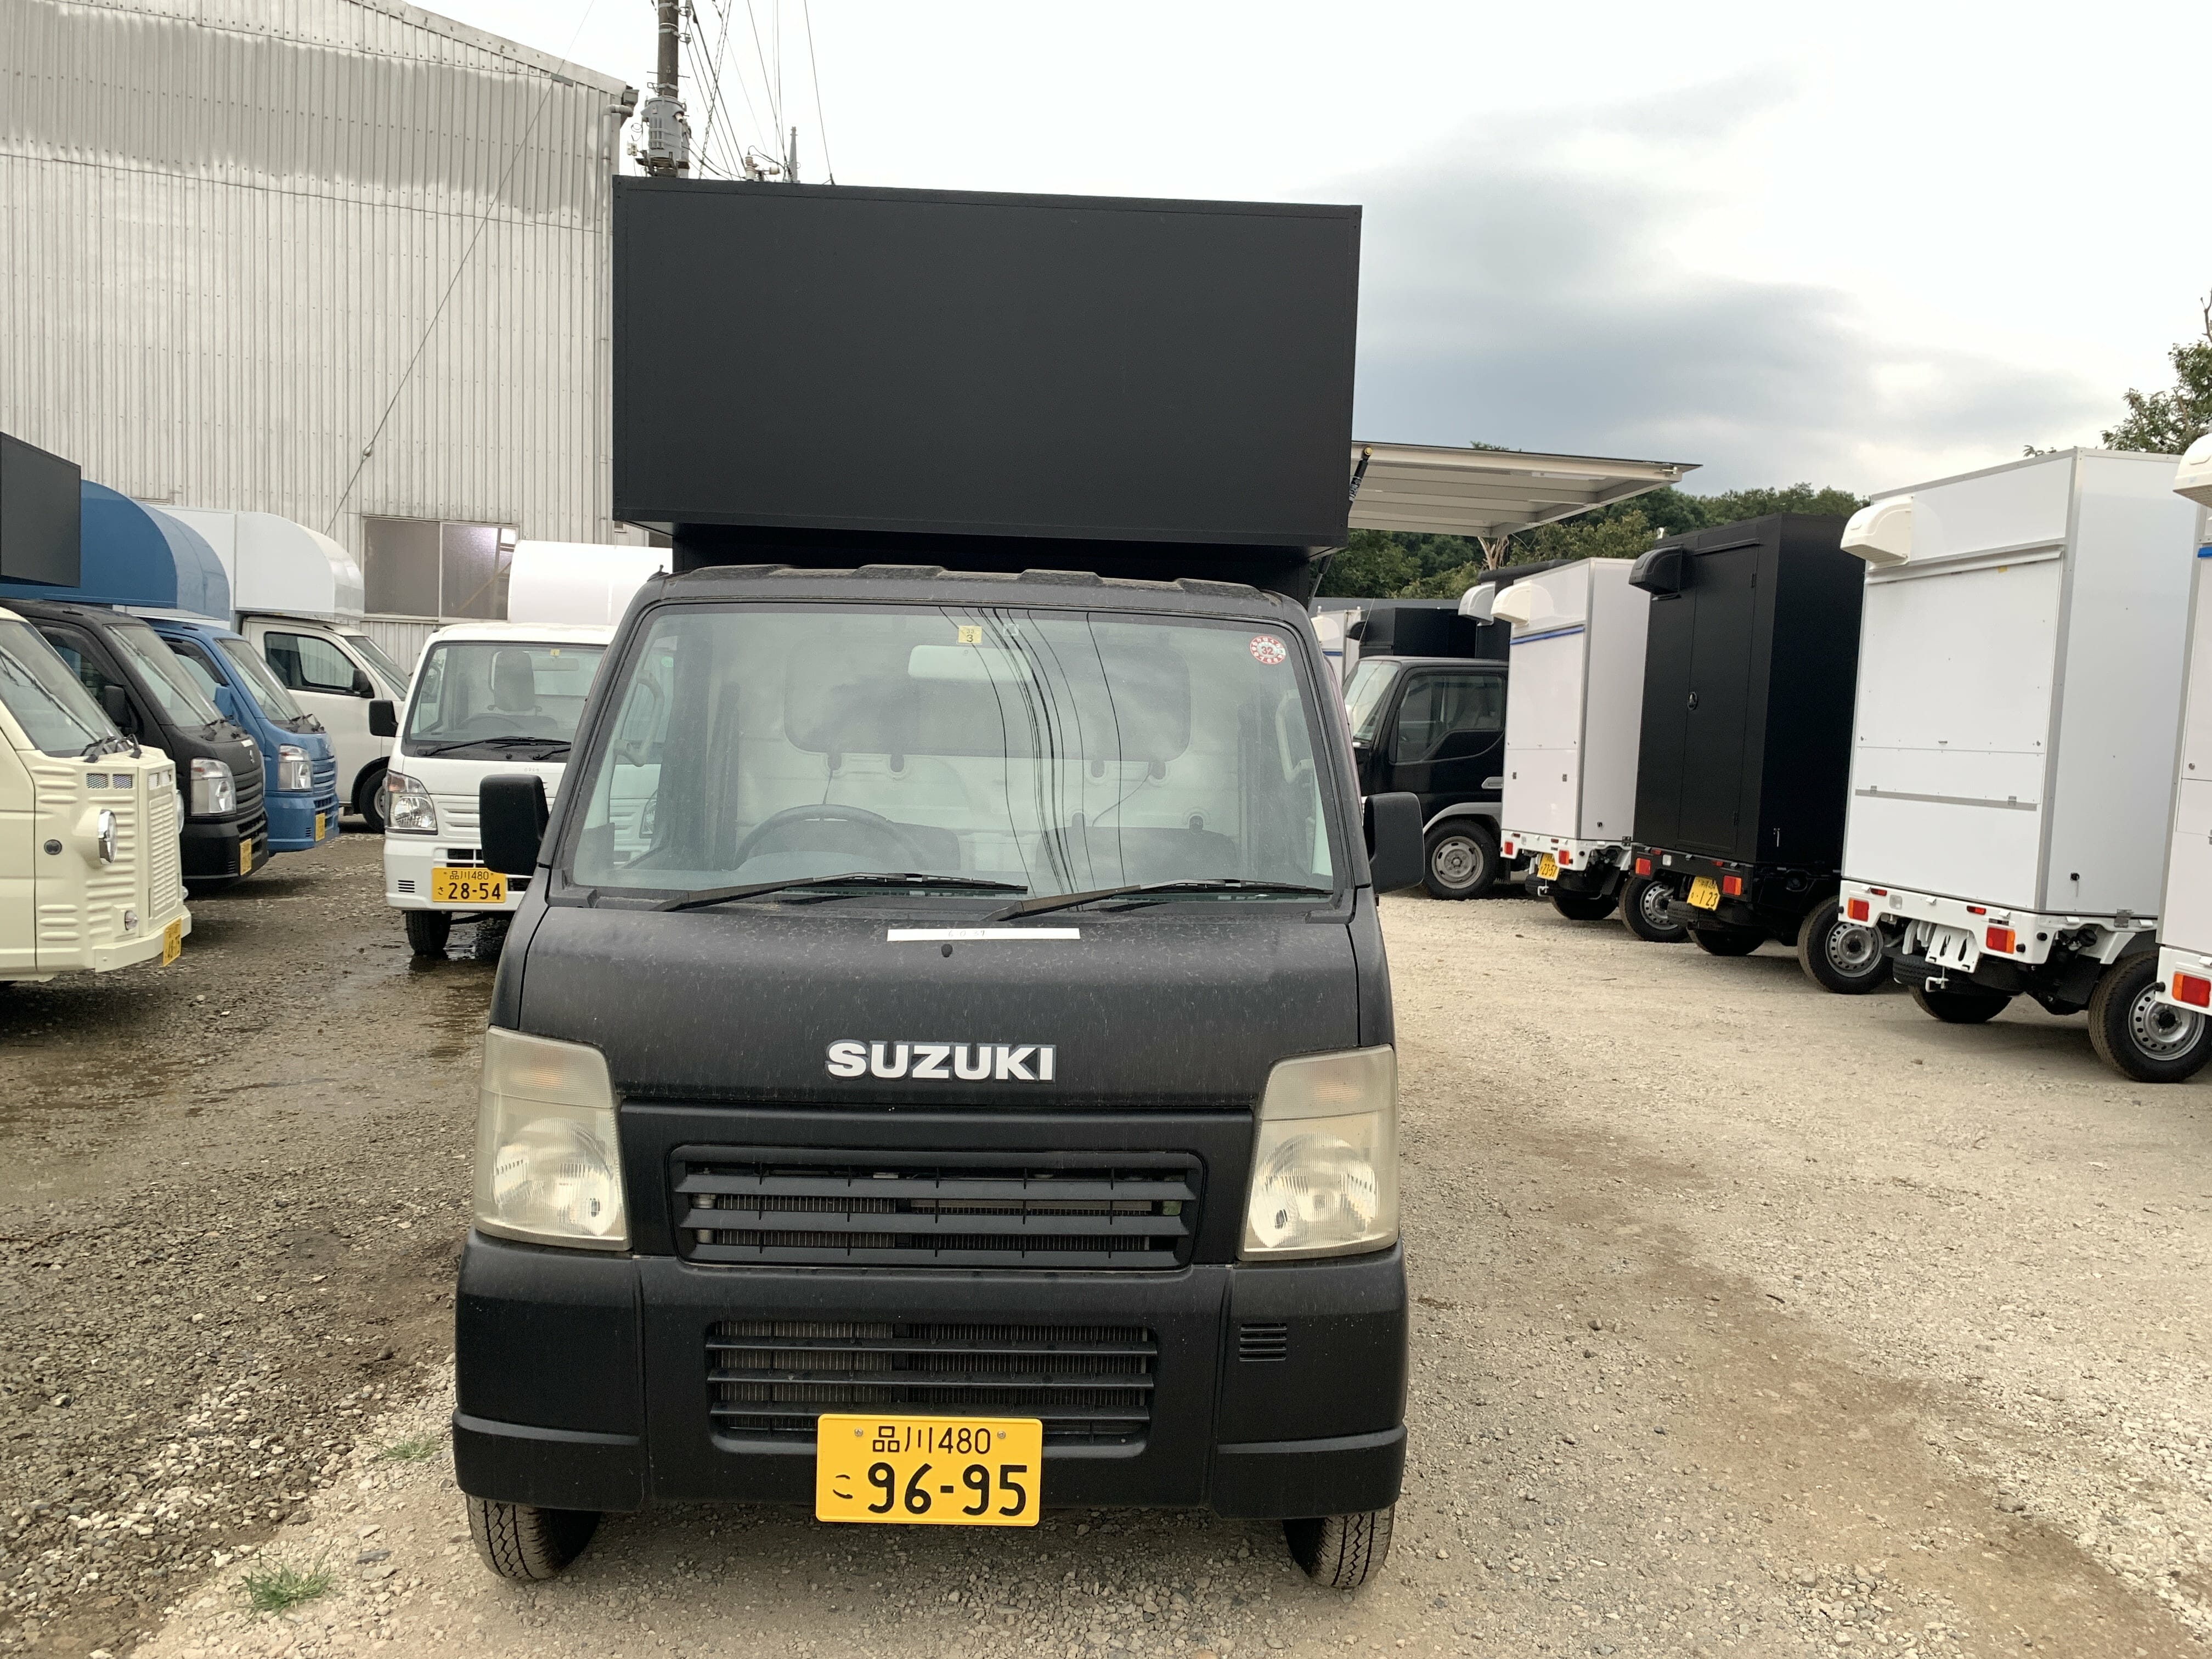 店頭在庫 Suzuki キャリイ 即納できますマットブラックのキッチンカー 移動販売車 キッチンカー の製作 フードトラックカンパニー 公式